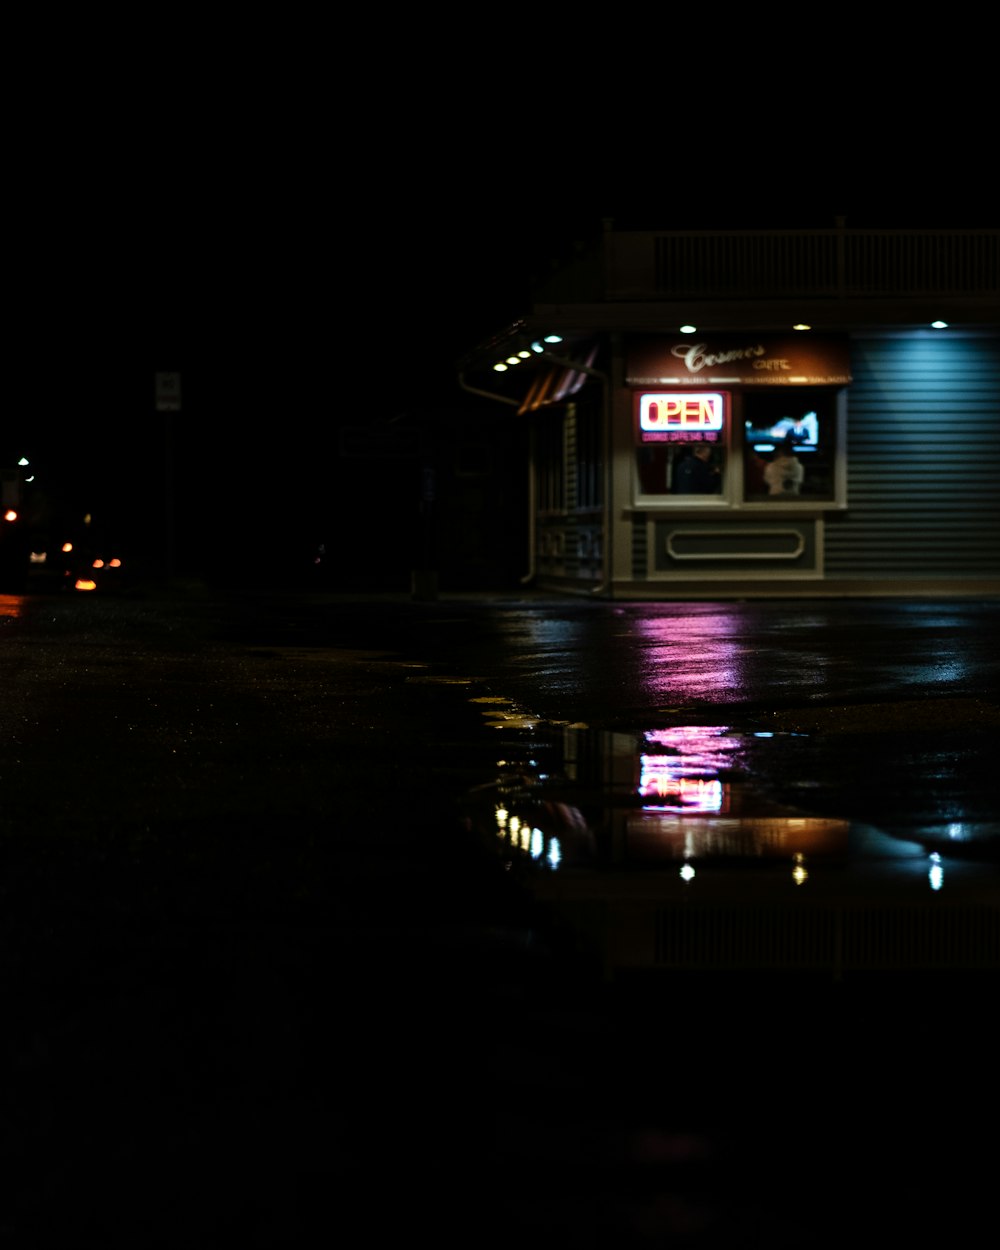 Un magasin dans l’obscurité et une flaque d’eau reflétant les néons de la vitrine